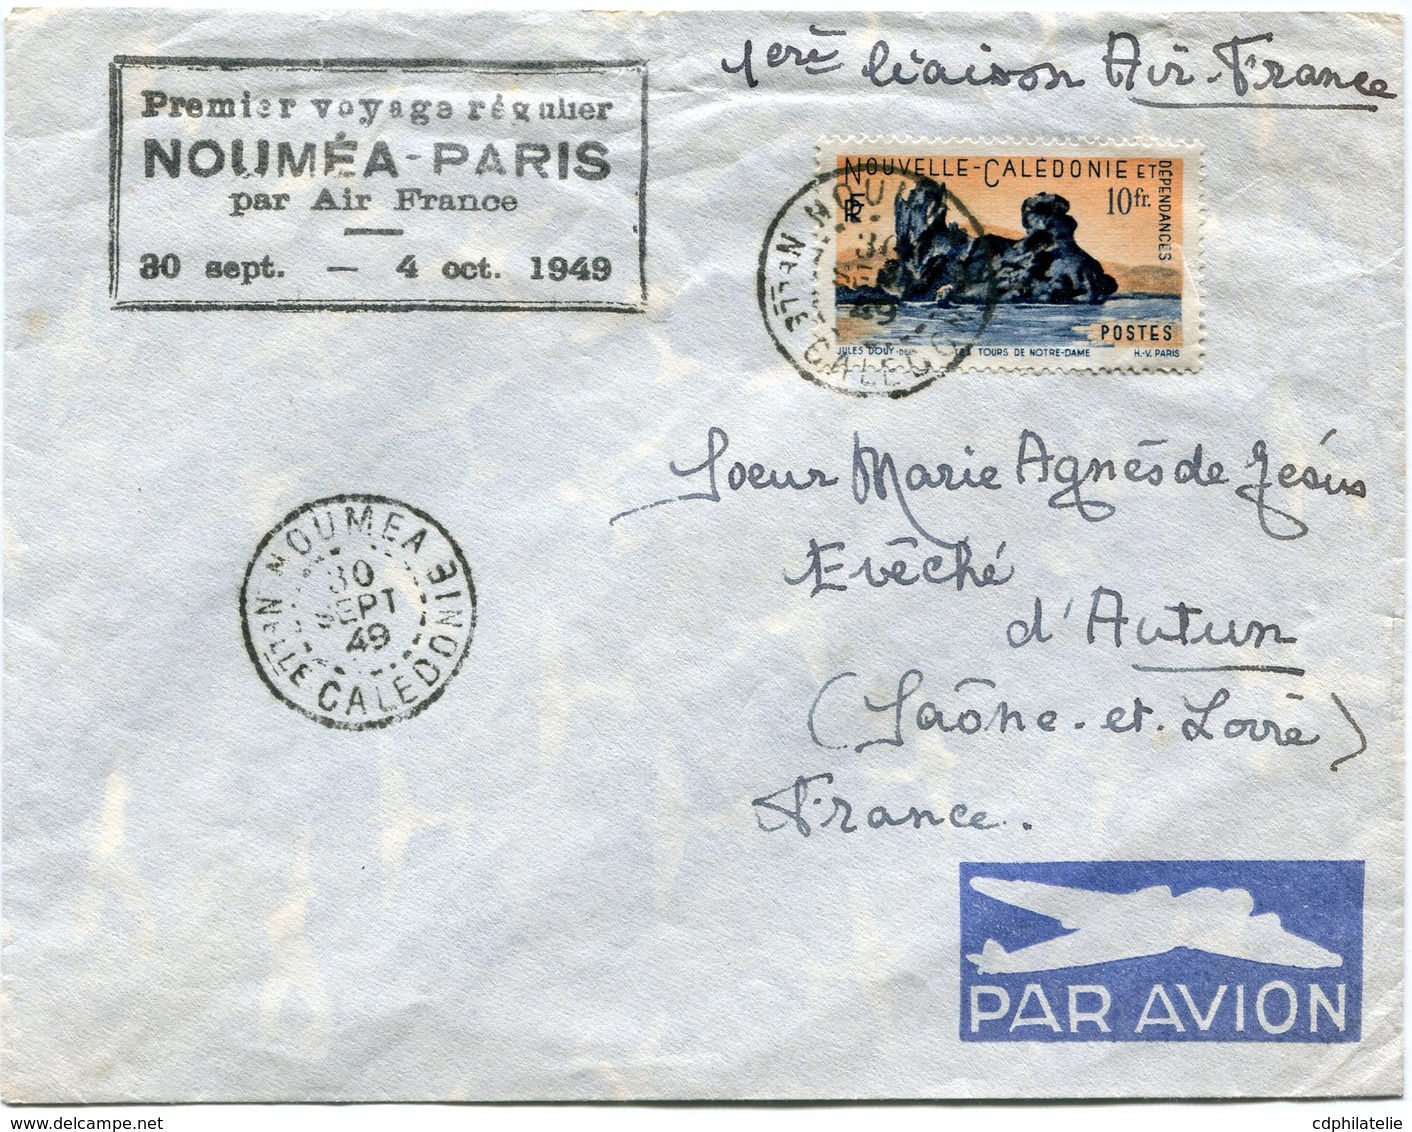 NOUVELLE-CALEDONIE LETTRE PAR AVION AVEC CACHET "PREMIER VOYAGE REGULIER NOUMEA-PARIS PAR AIR FRANCE 30 SEPT-4 OCT 1949" - Storia Postale